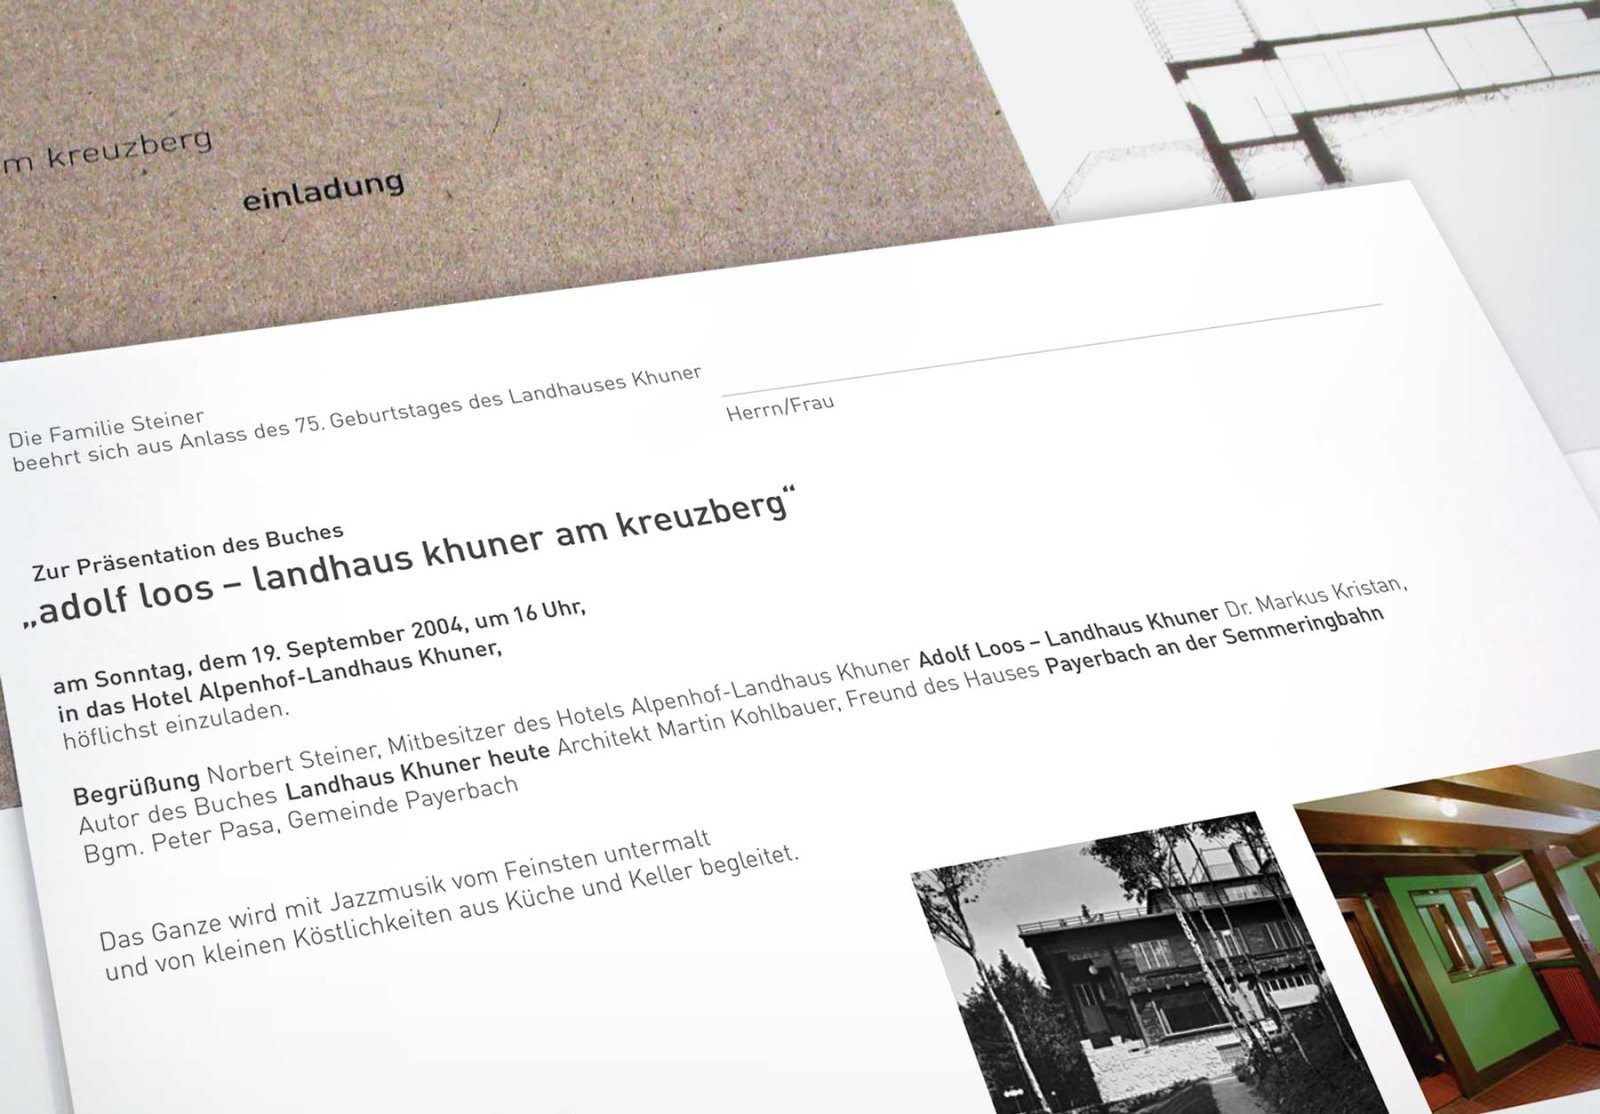 Einladung zur Buchpräsentation Adolf Loos, Landhaus Khuner am Kreuzberg Rückseite